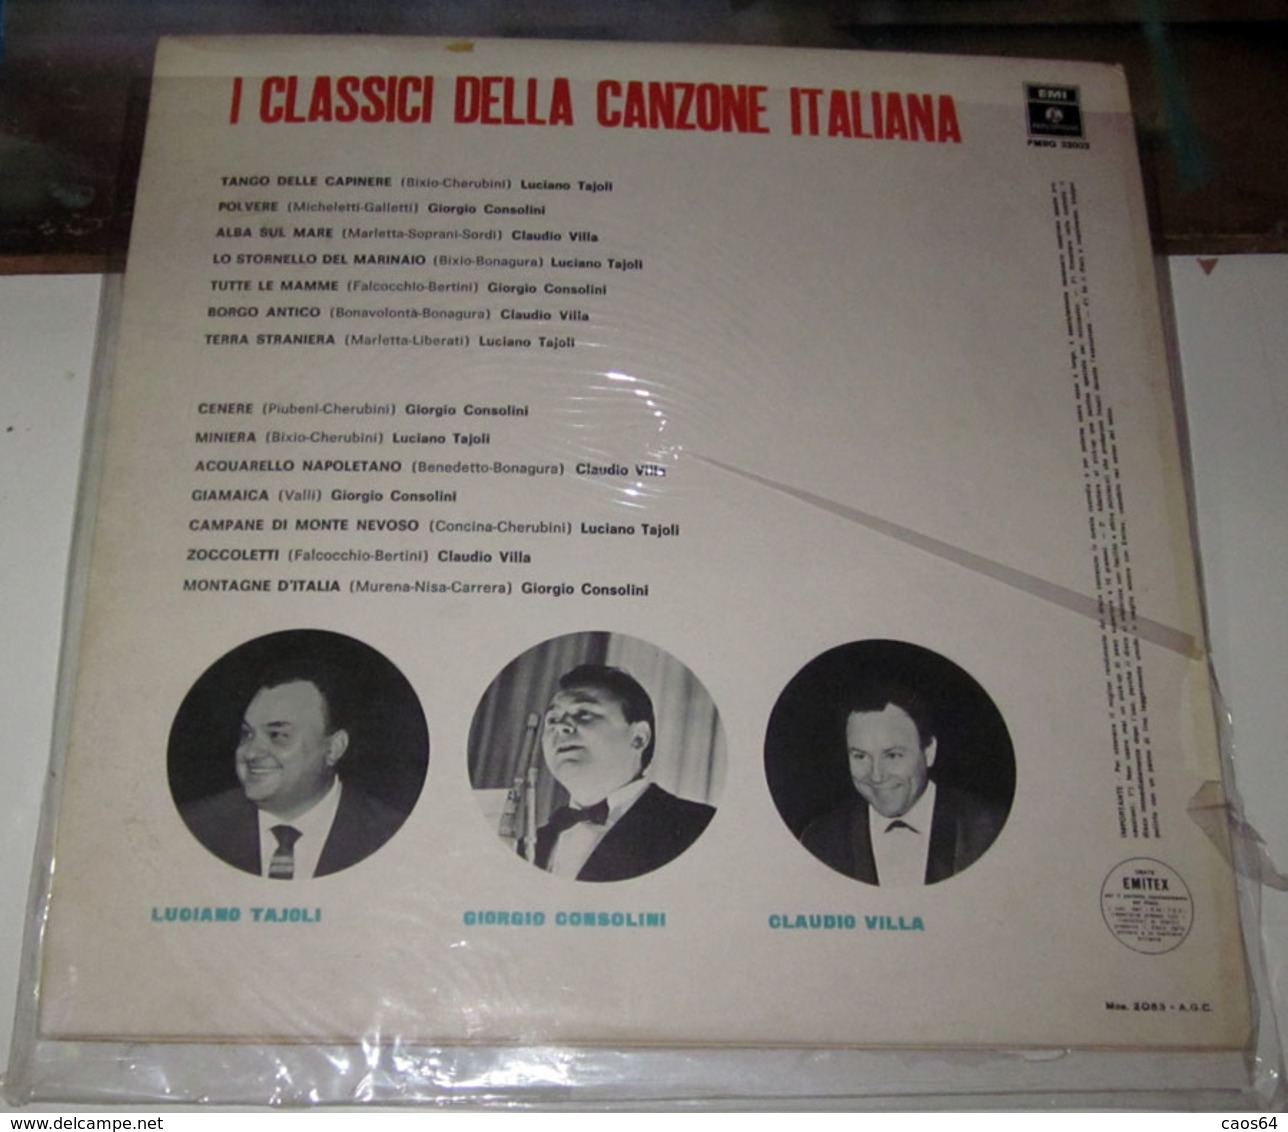 LUCIANO TAJOLI GIORGIO CONSOLINI CLAUDIO VILLA I CLASSICI DELLA CANZONE ITALIANA - Autres - Musique Italienne